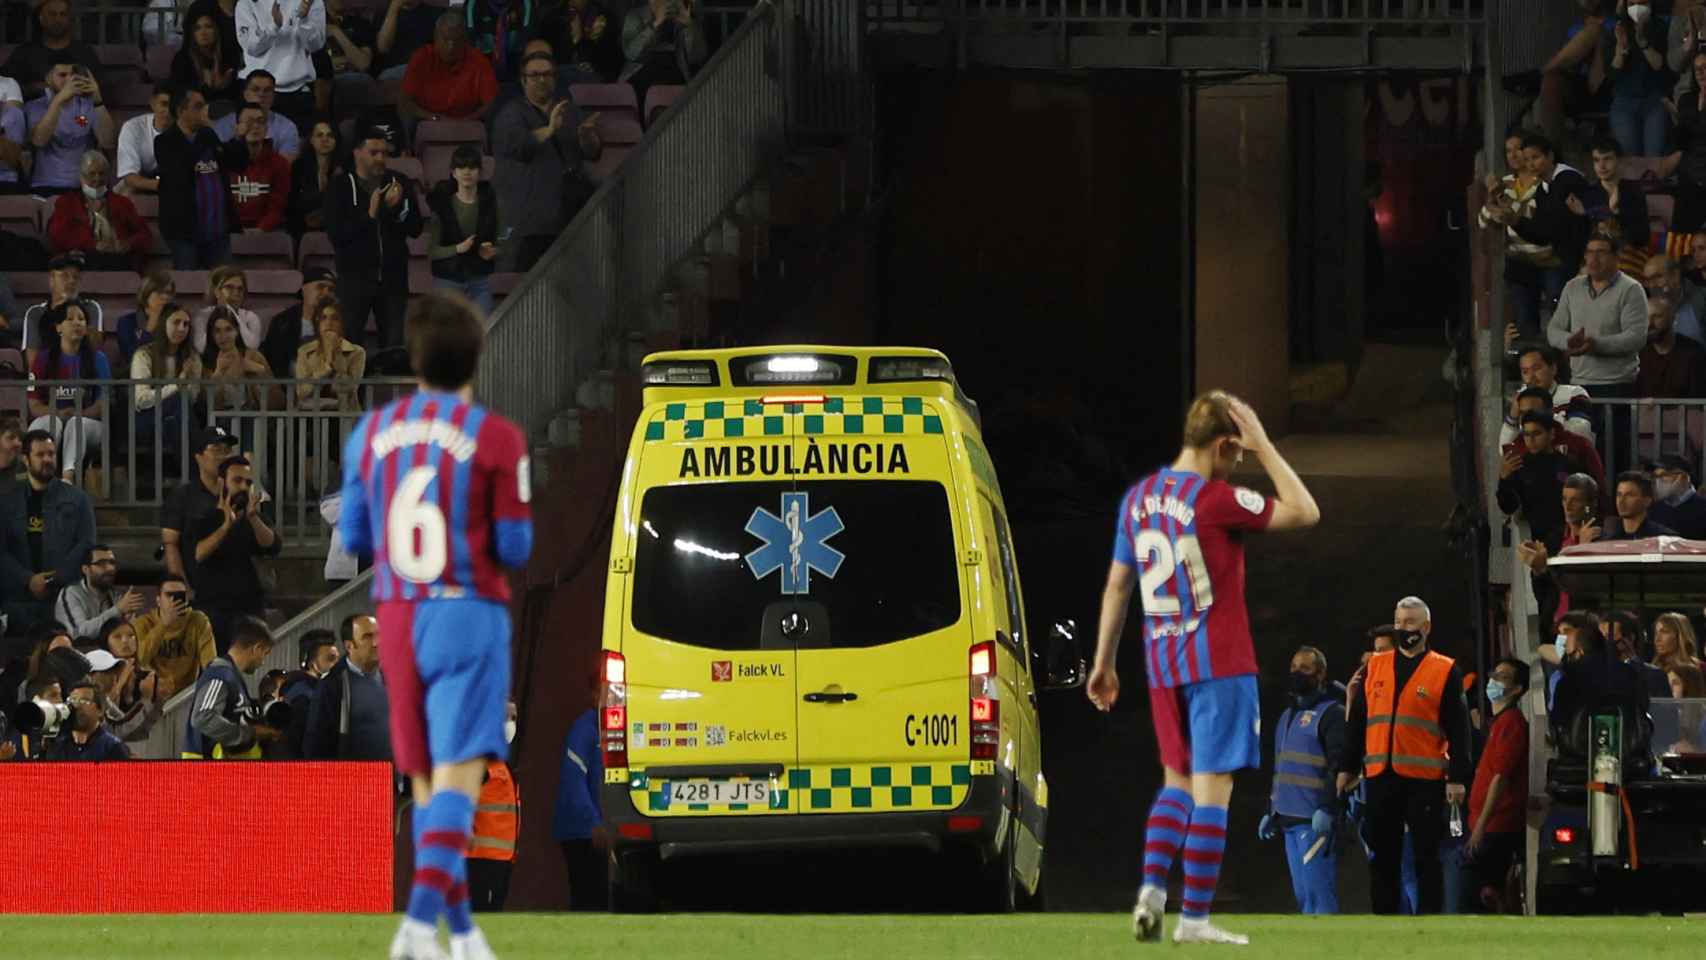 La ambulancia saliendo del Camp Nou